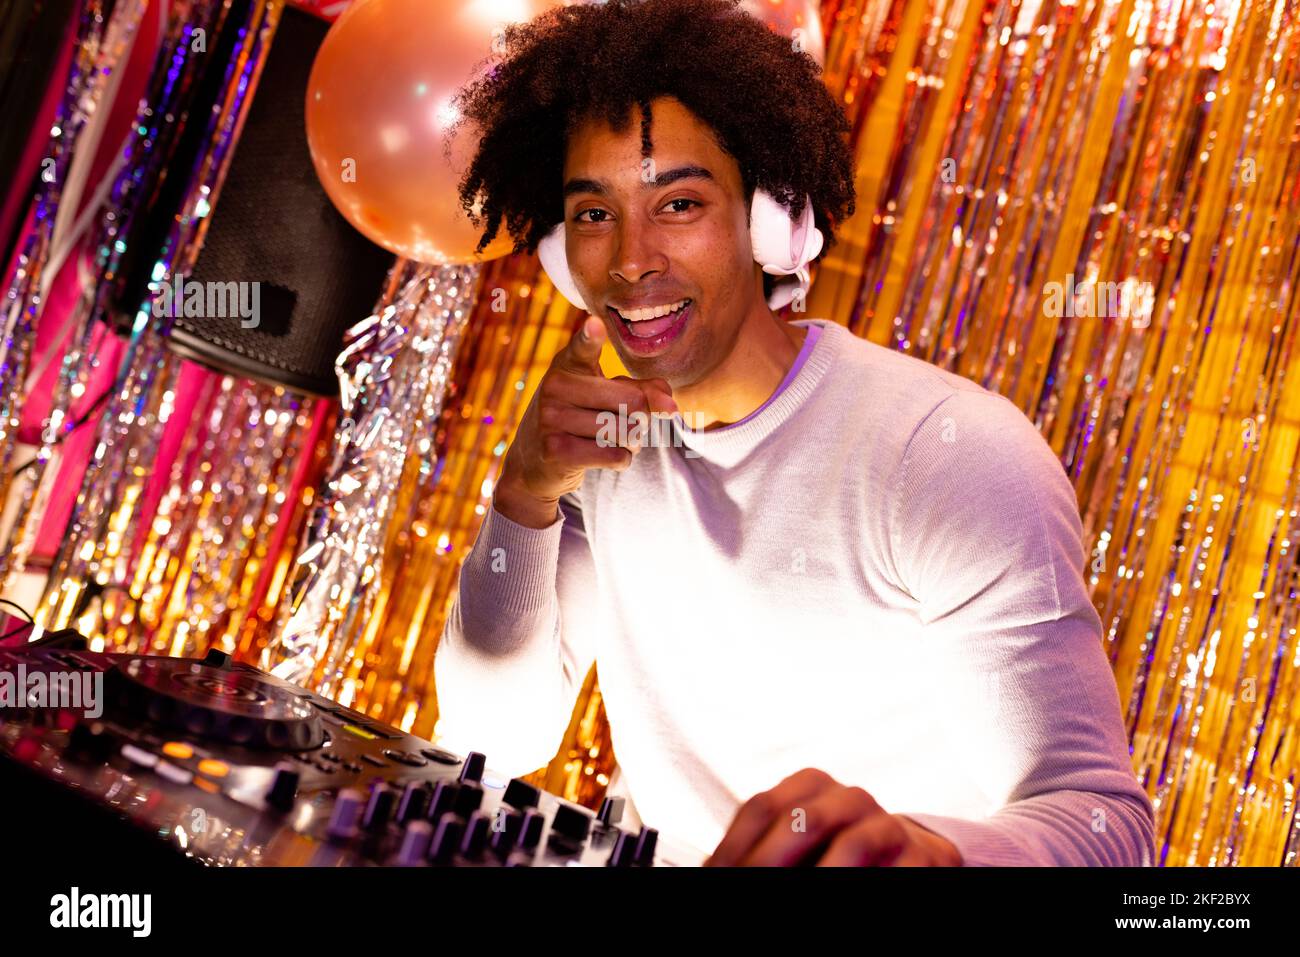 Portrait d'un DJ afro-américain souriant dans un casque jouant de la musique dans une boîte de nuit pointant Banque D'Images